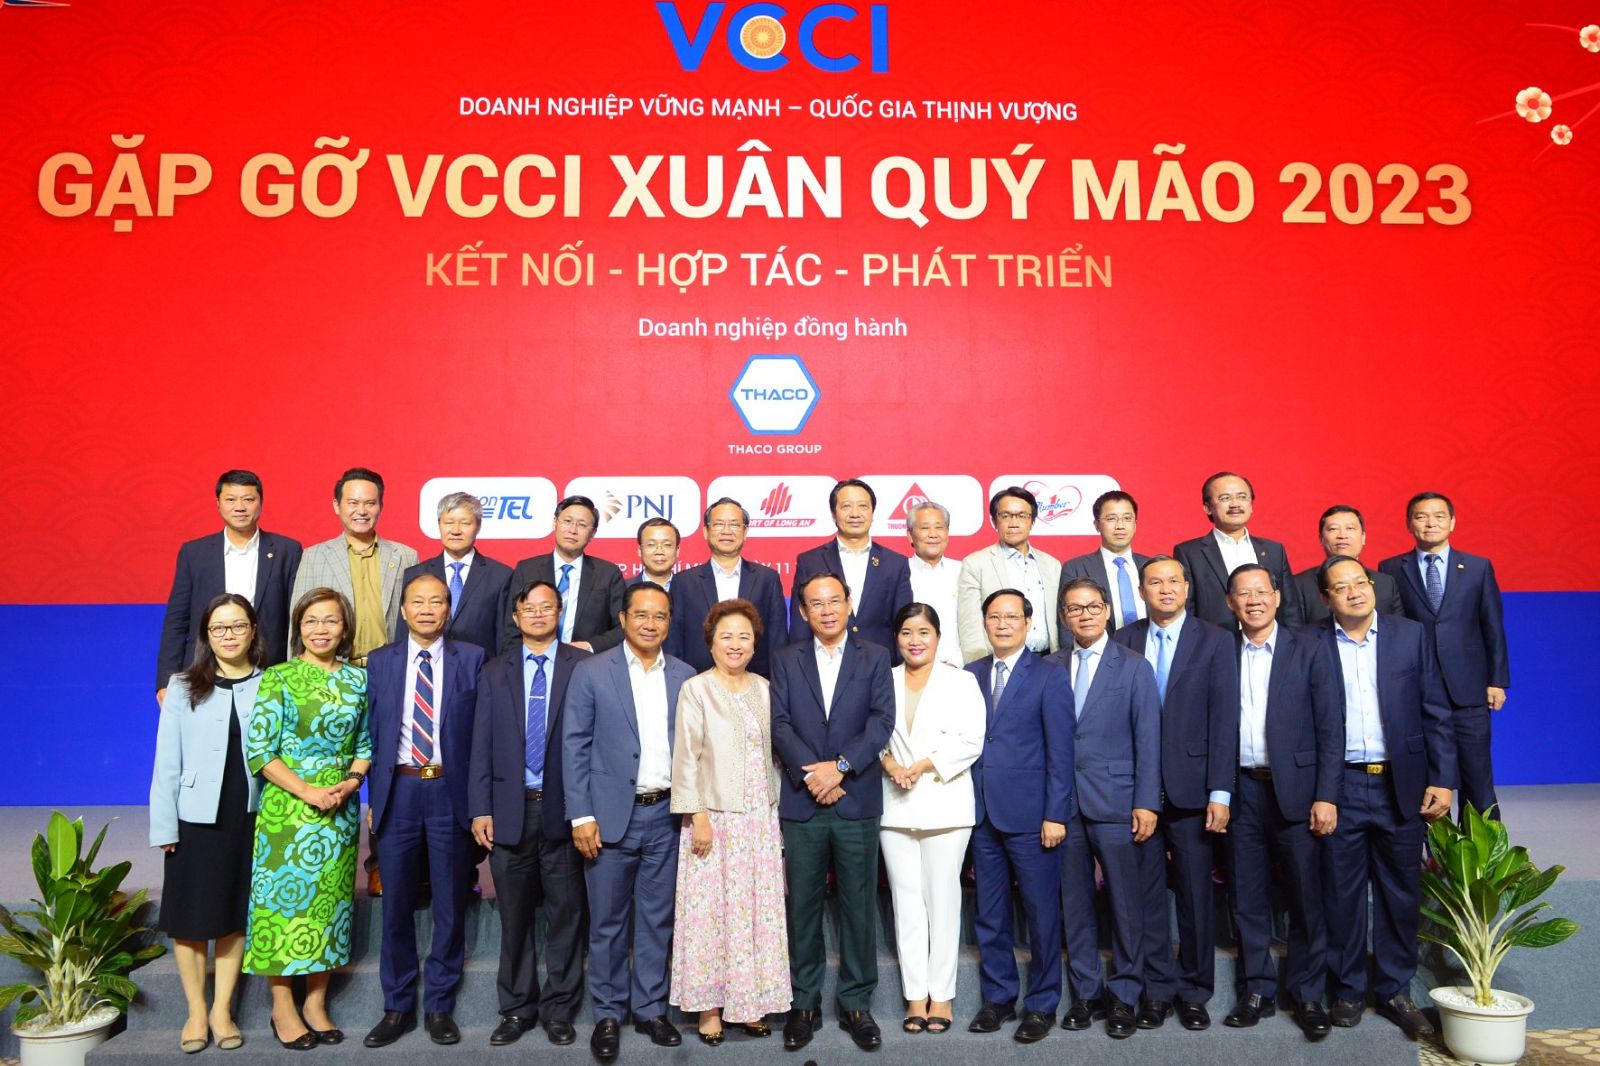  Lãnh đạo 6 tỉnh vùng Đông Nam Bộ và Long An cùng lãnh đạo VCCI và đại diện các doanh nghiệp tại cuộc gặp gỡ VCCI Xuân Quý Mão.p/Ảnh: Q.Tuấn